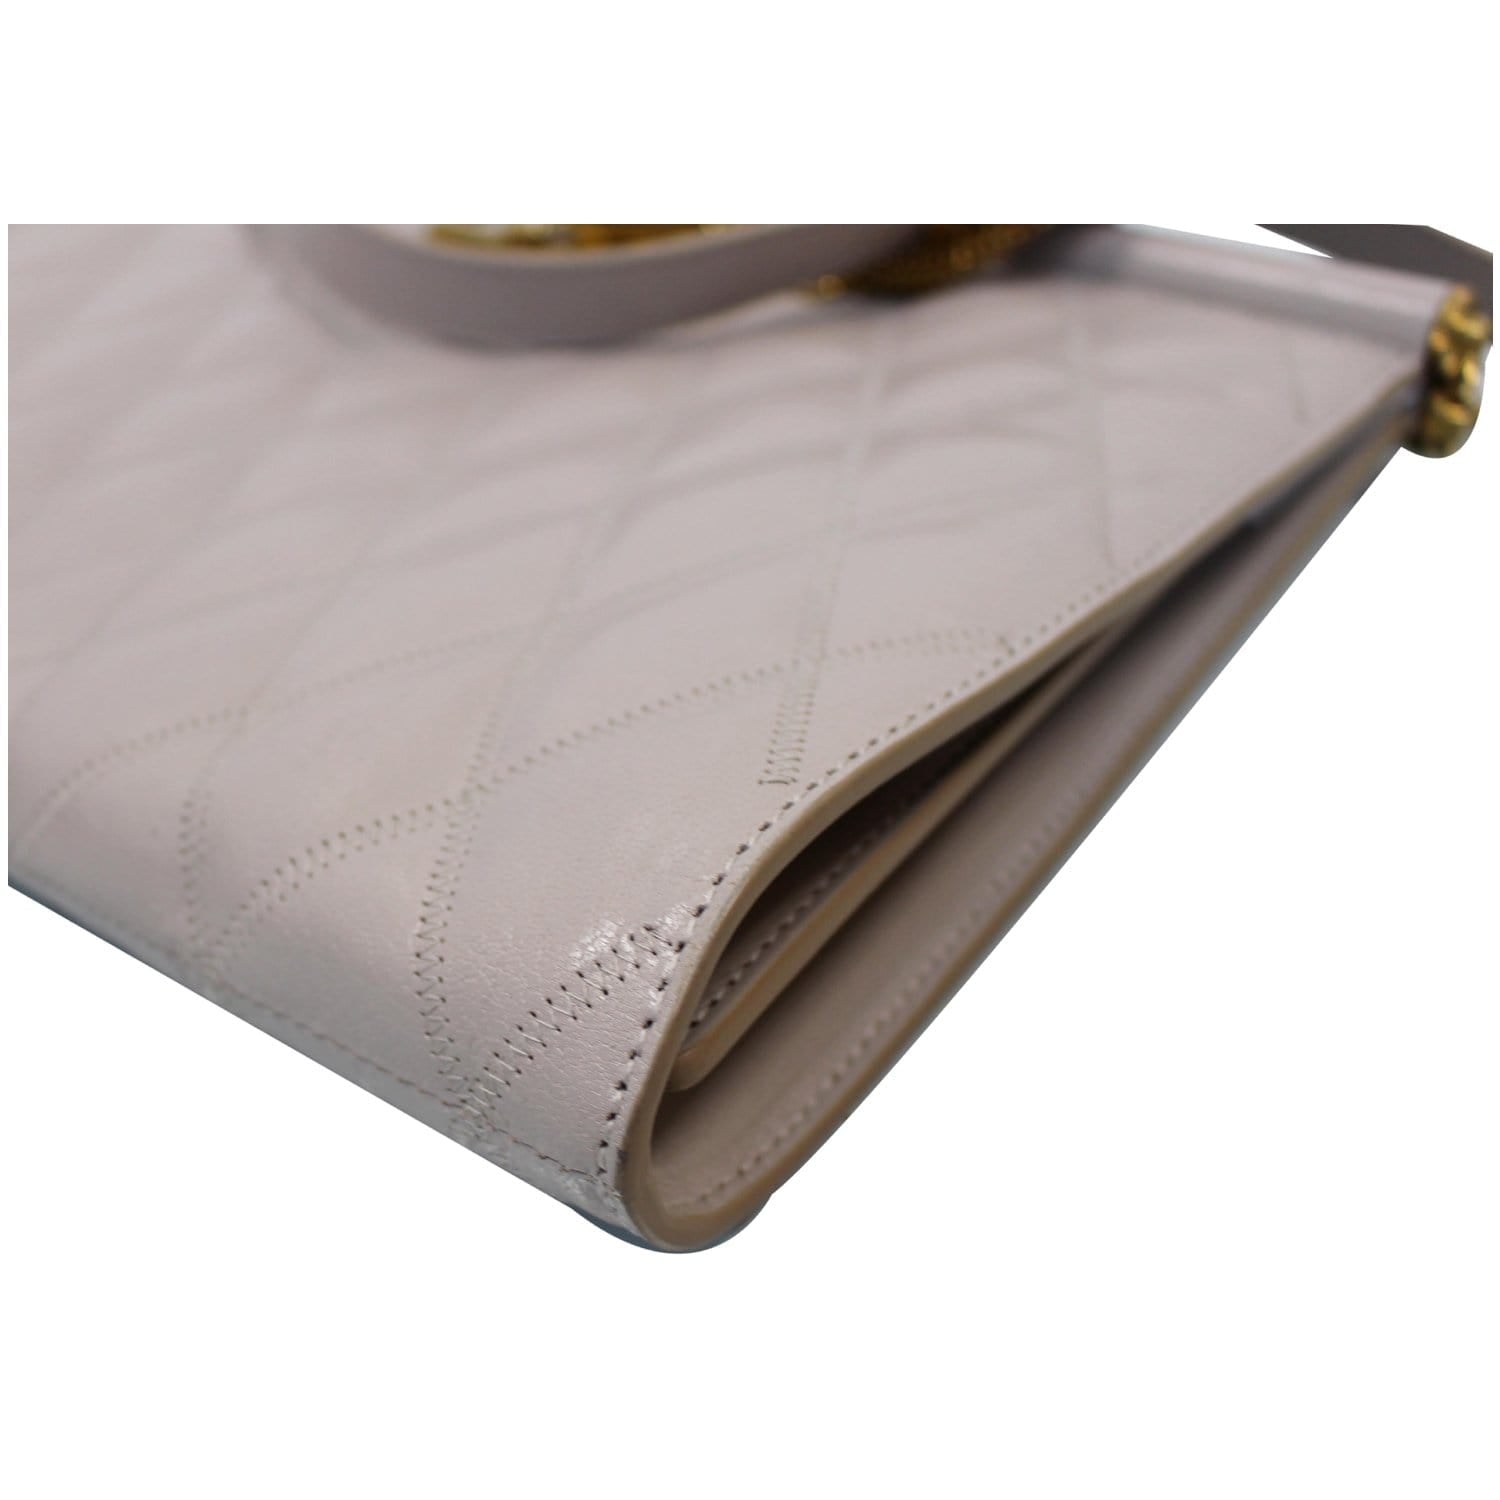 Prada wallet with shoulder - Gem